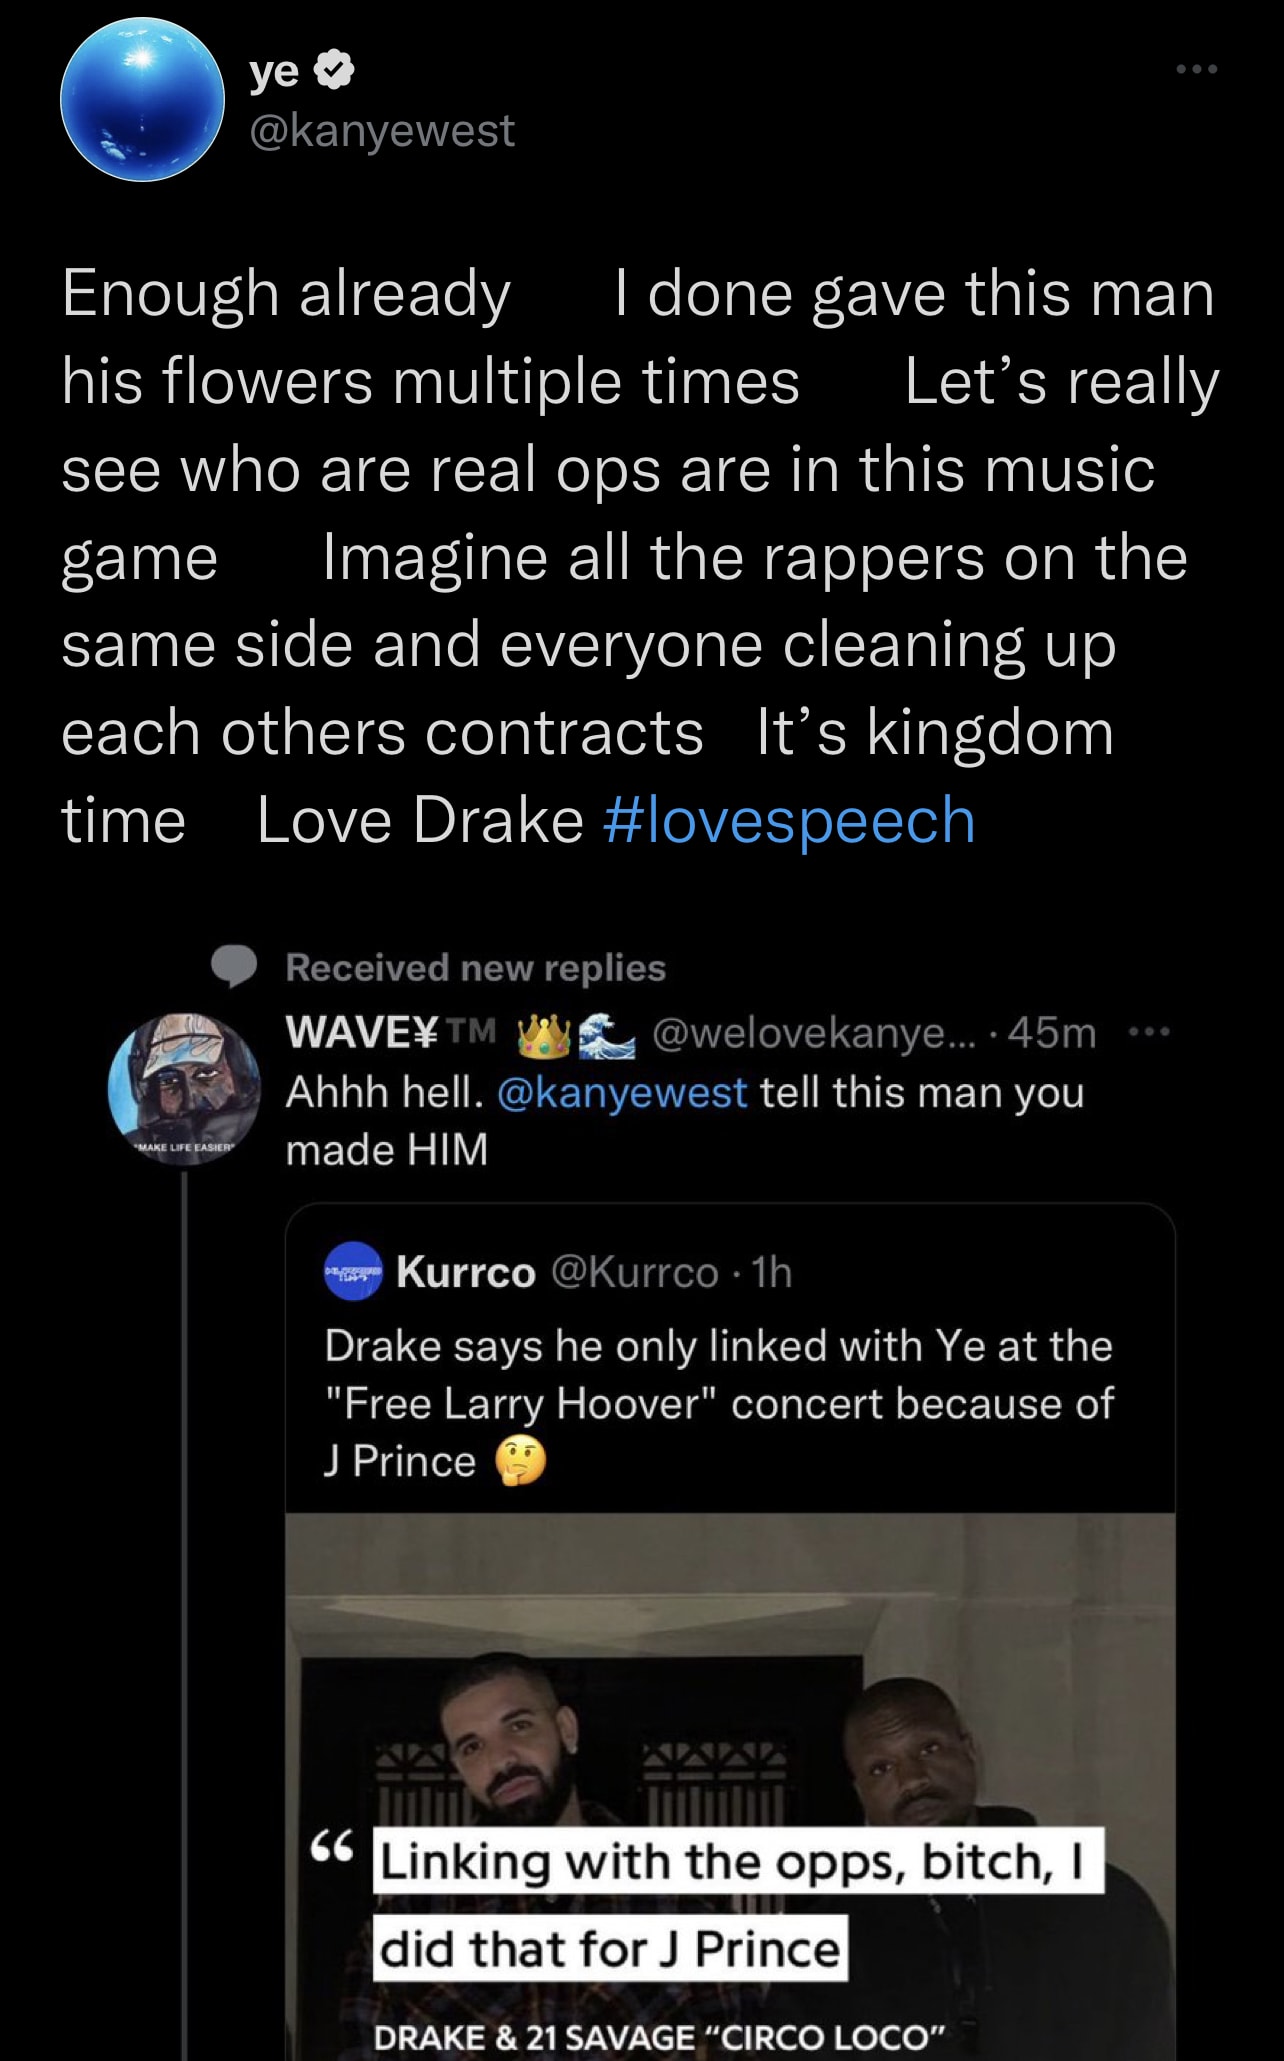 Ye is seen tweeting about Drake lyrics